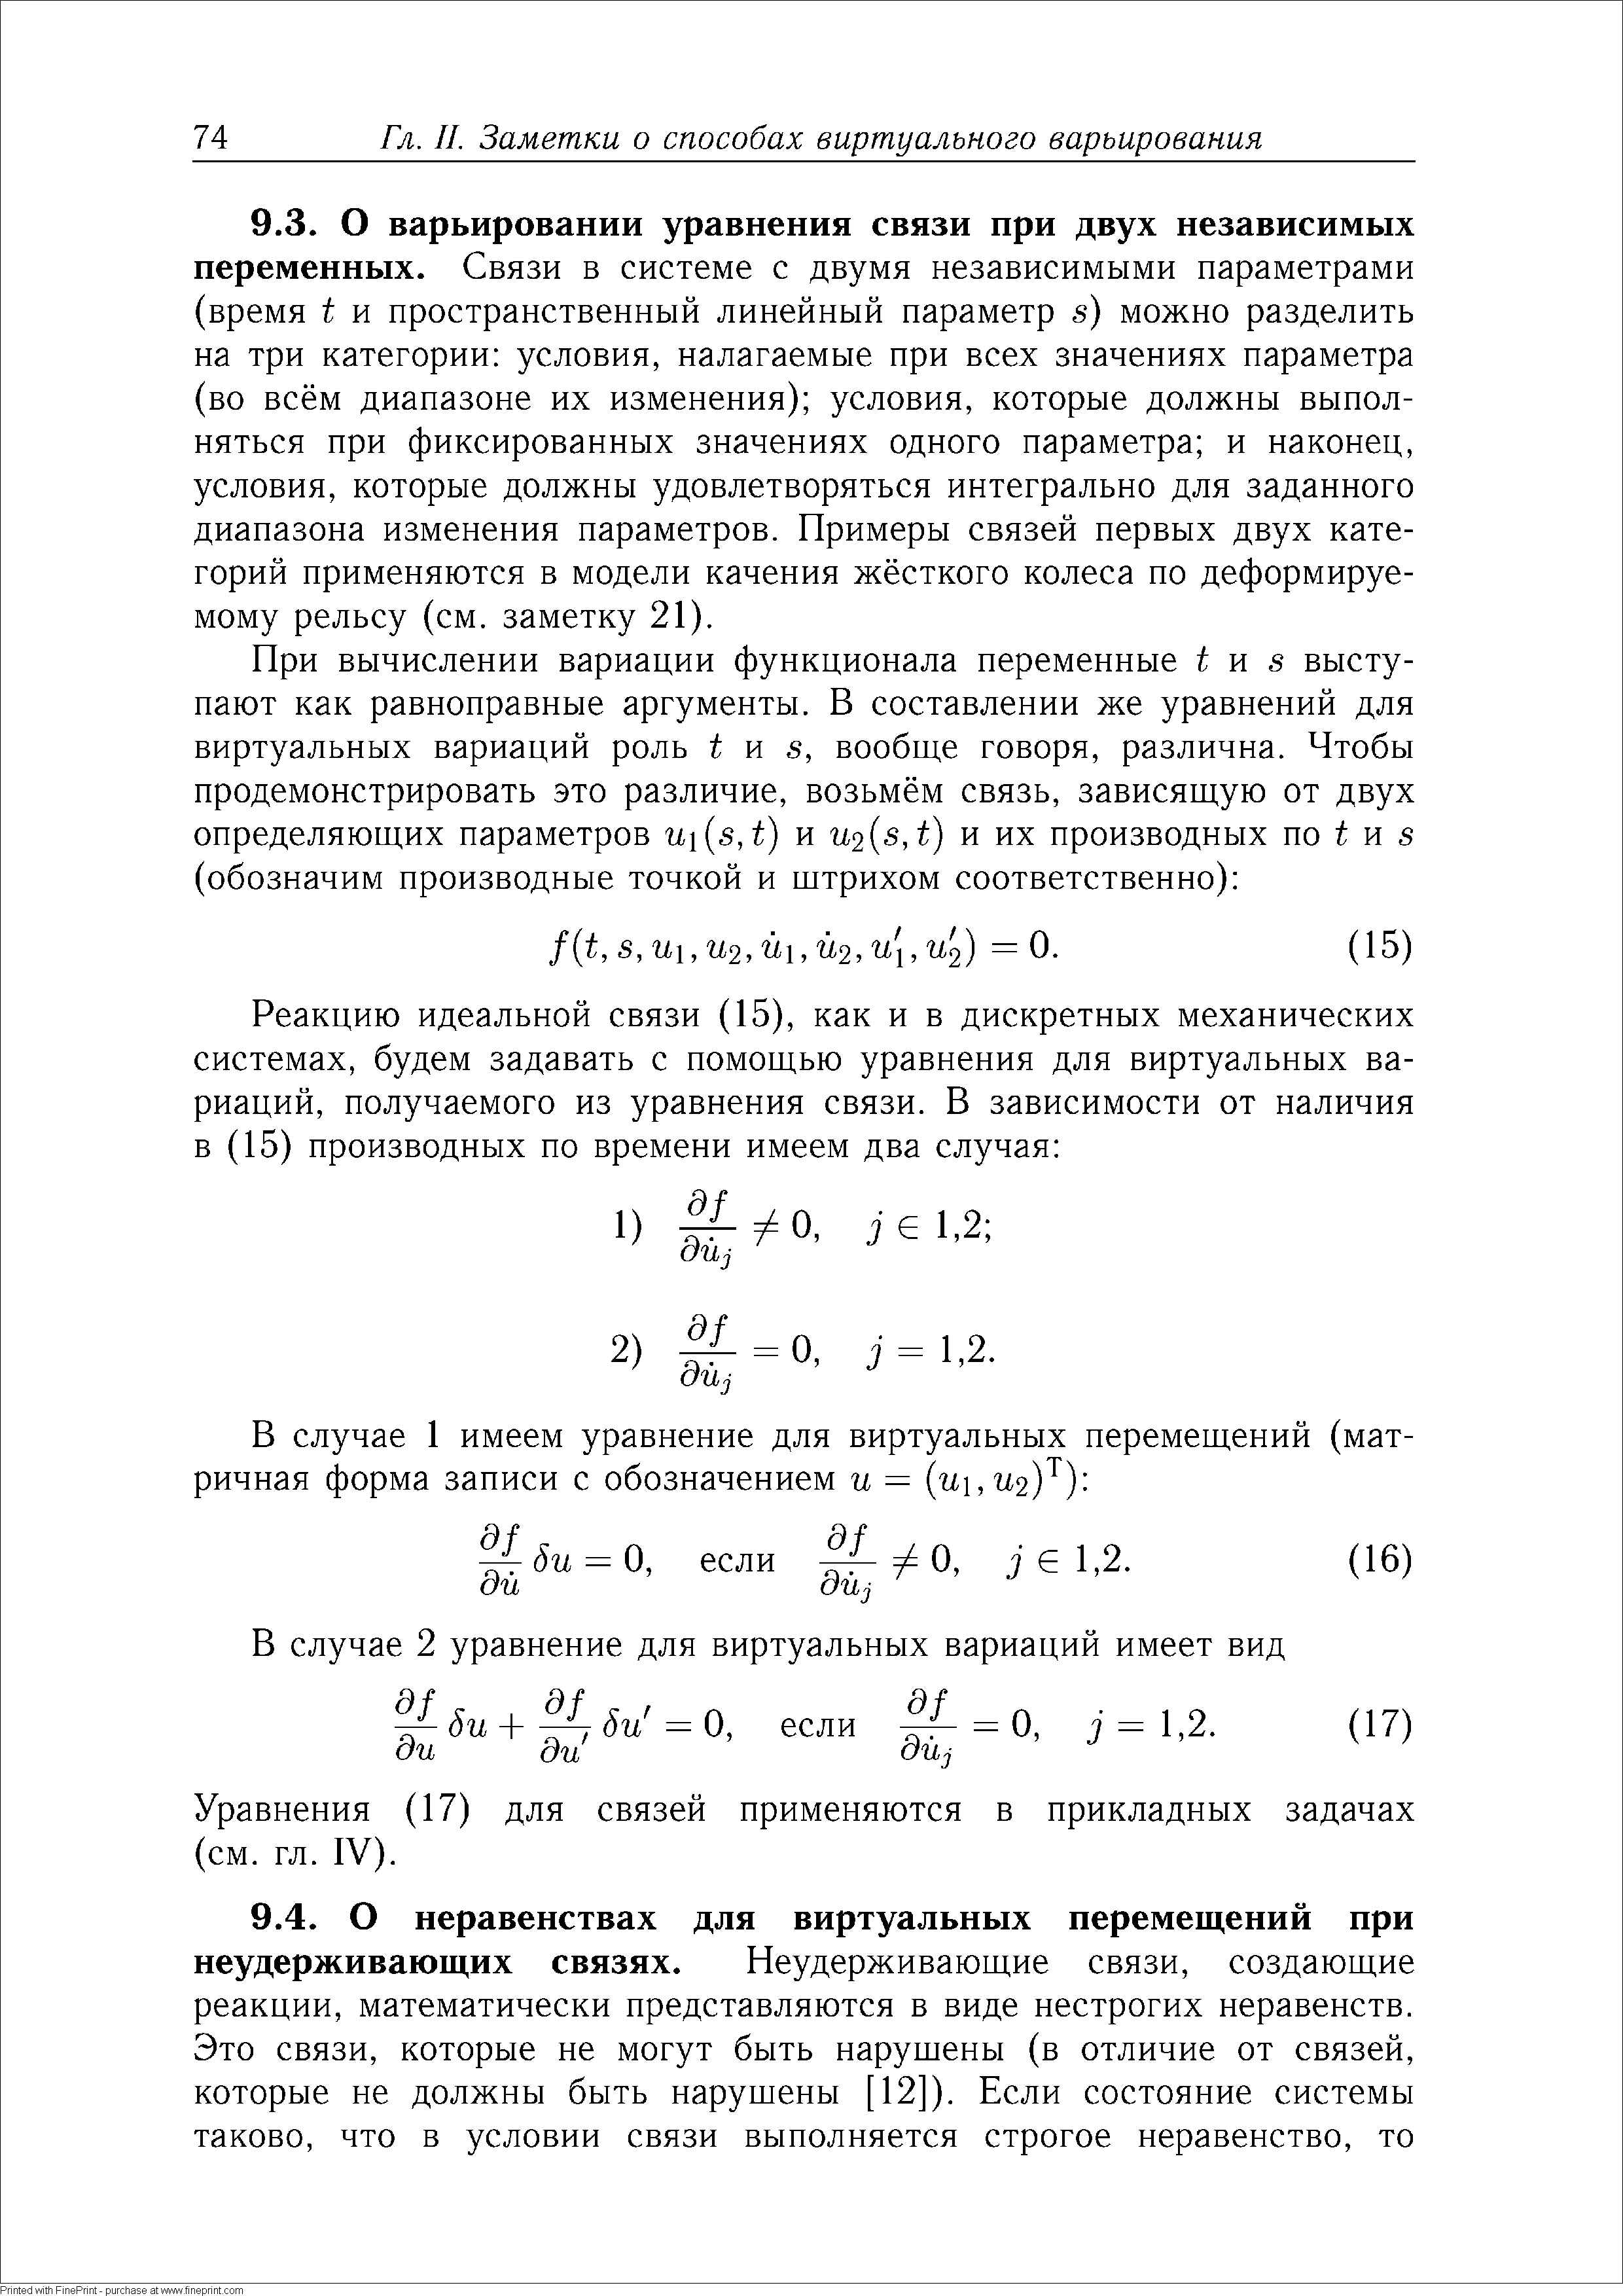 Уравнения (17) для связей применяются в прикладных задачах (см. гл. IV).
